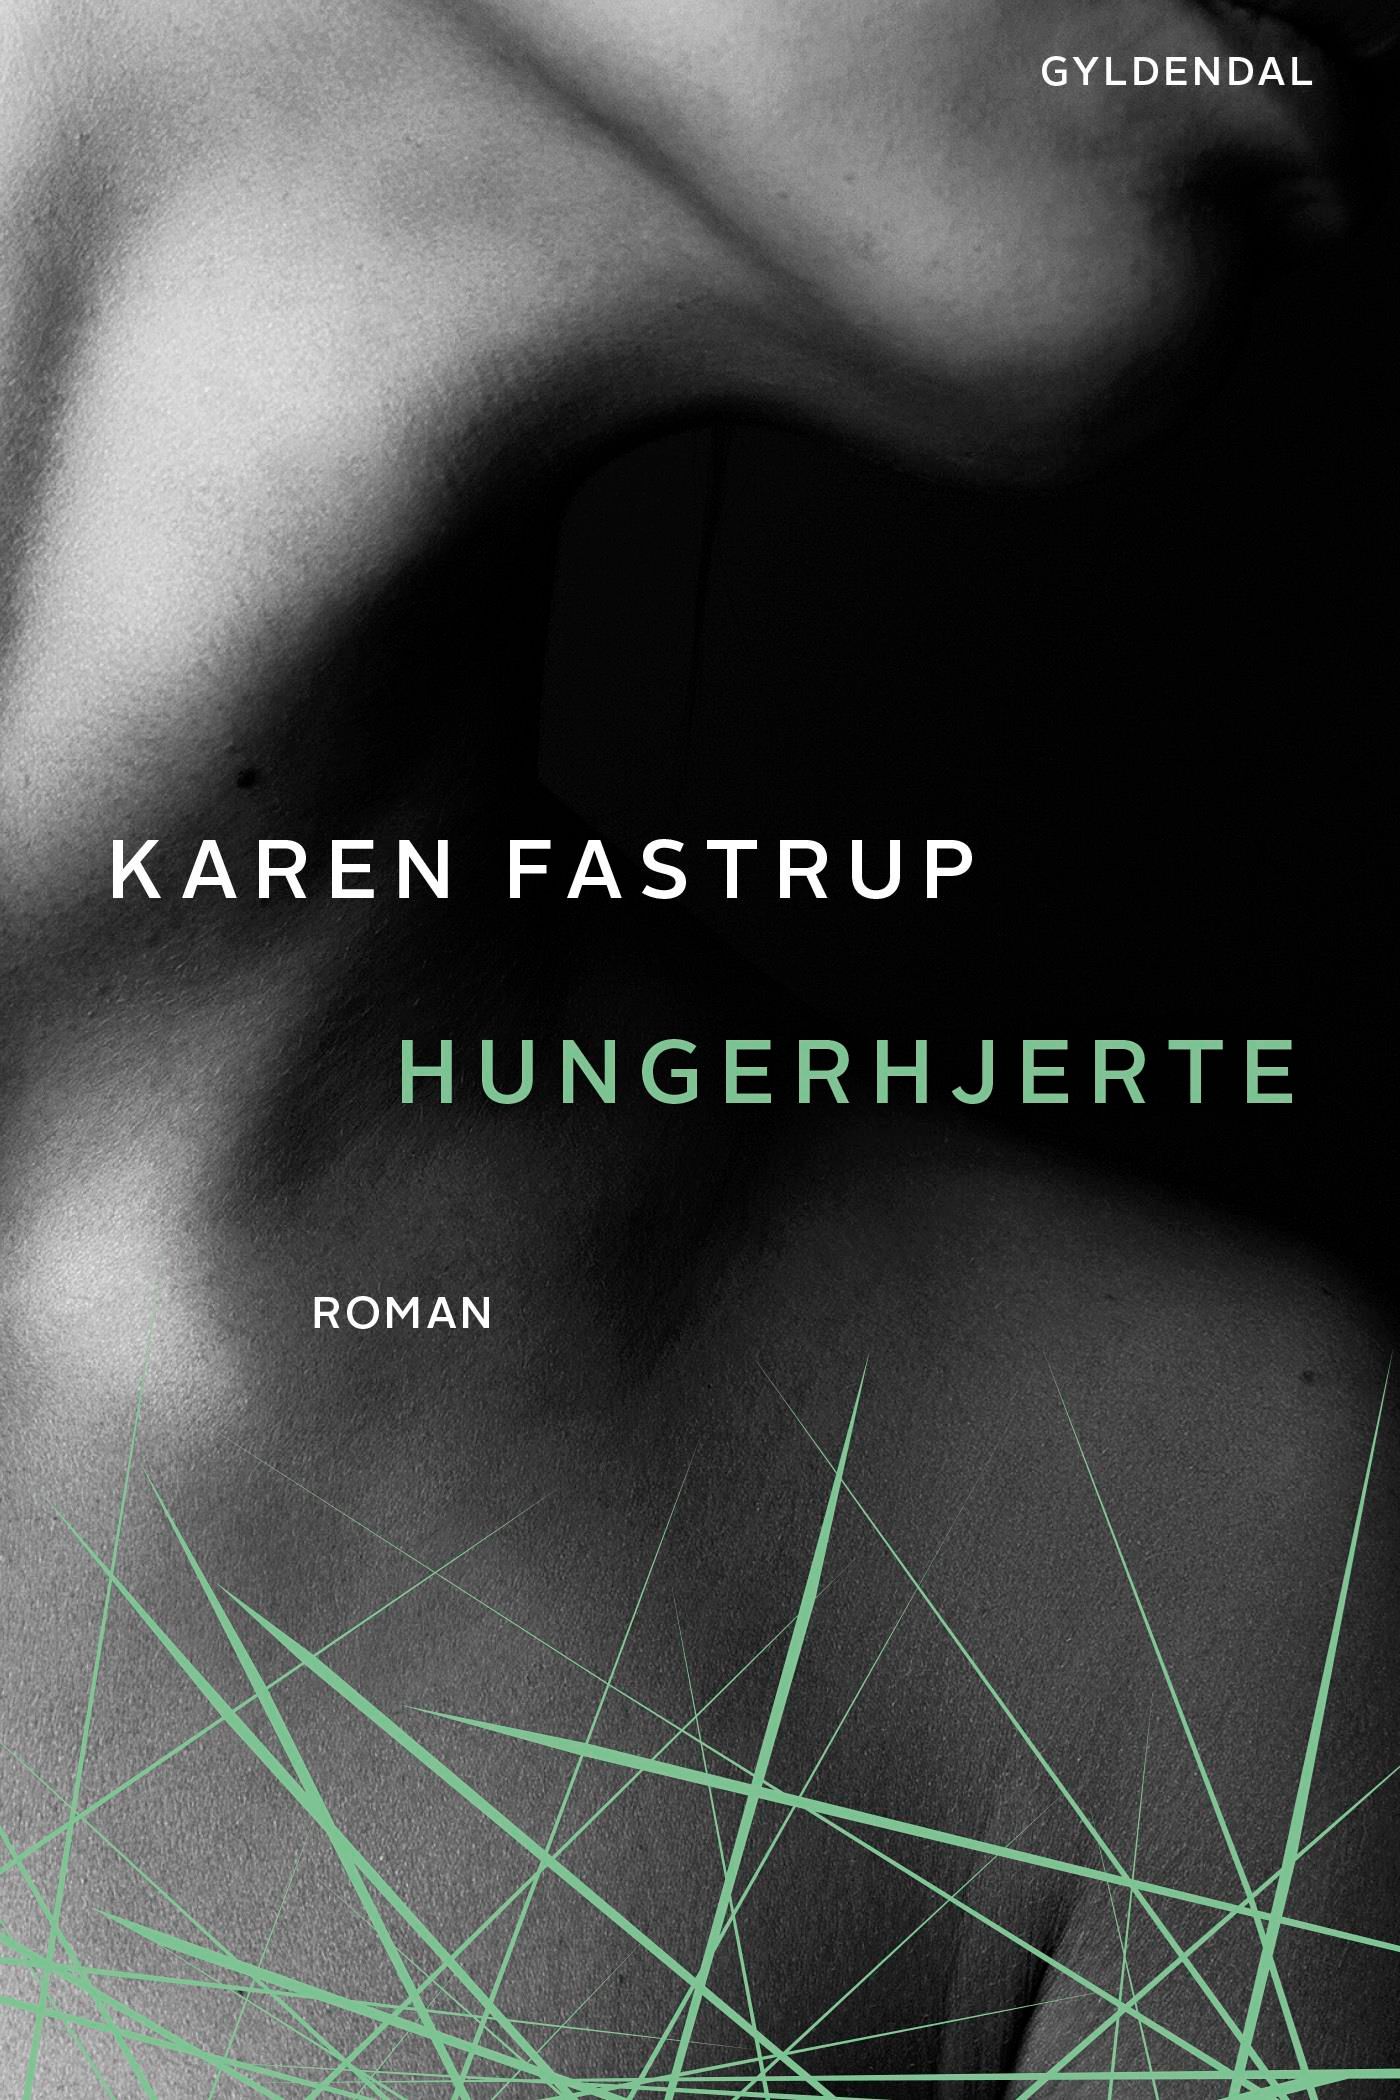 Hungerhjerte, eBook by Karen Fastrup